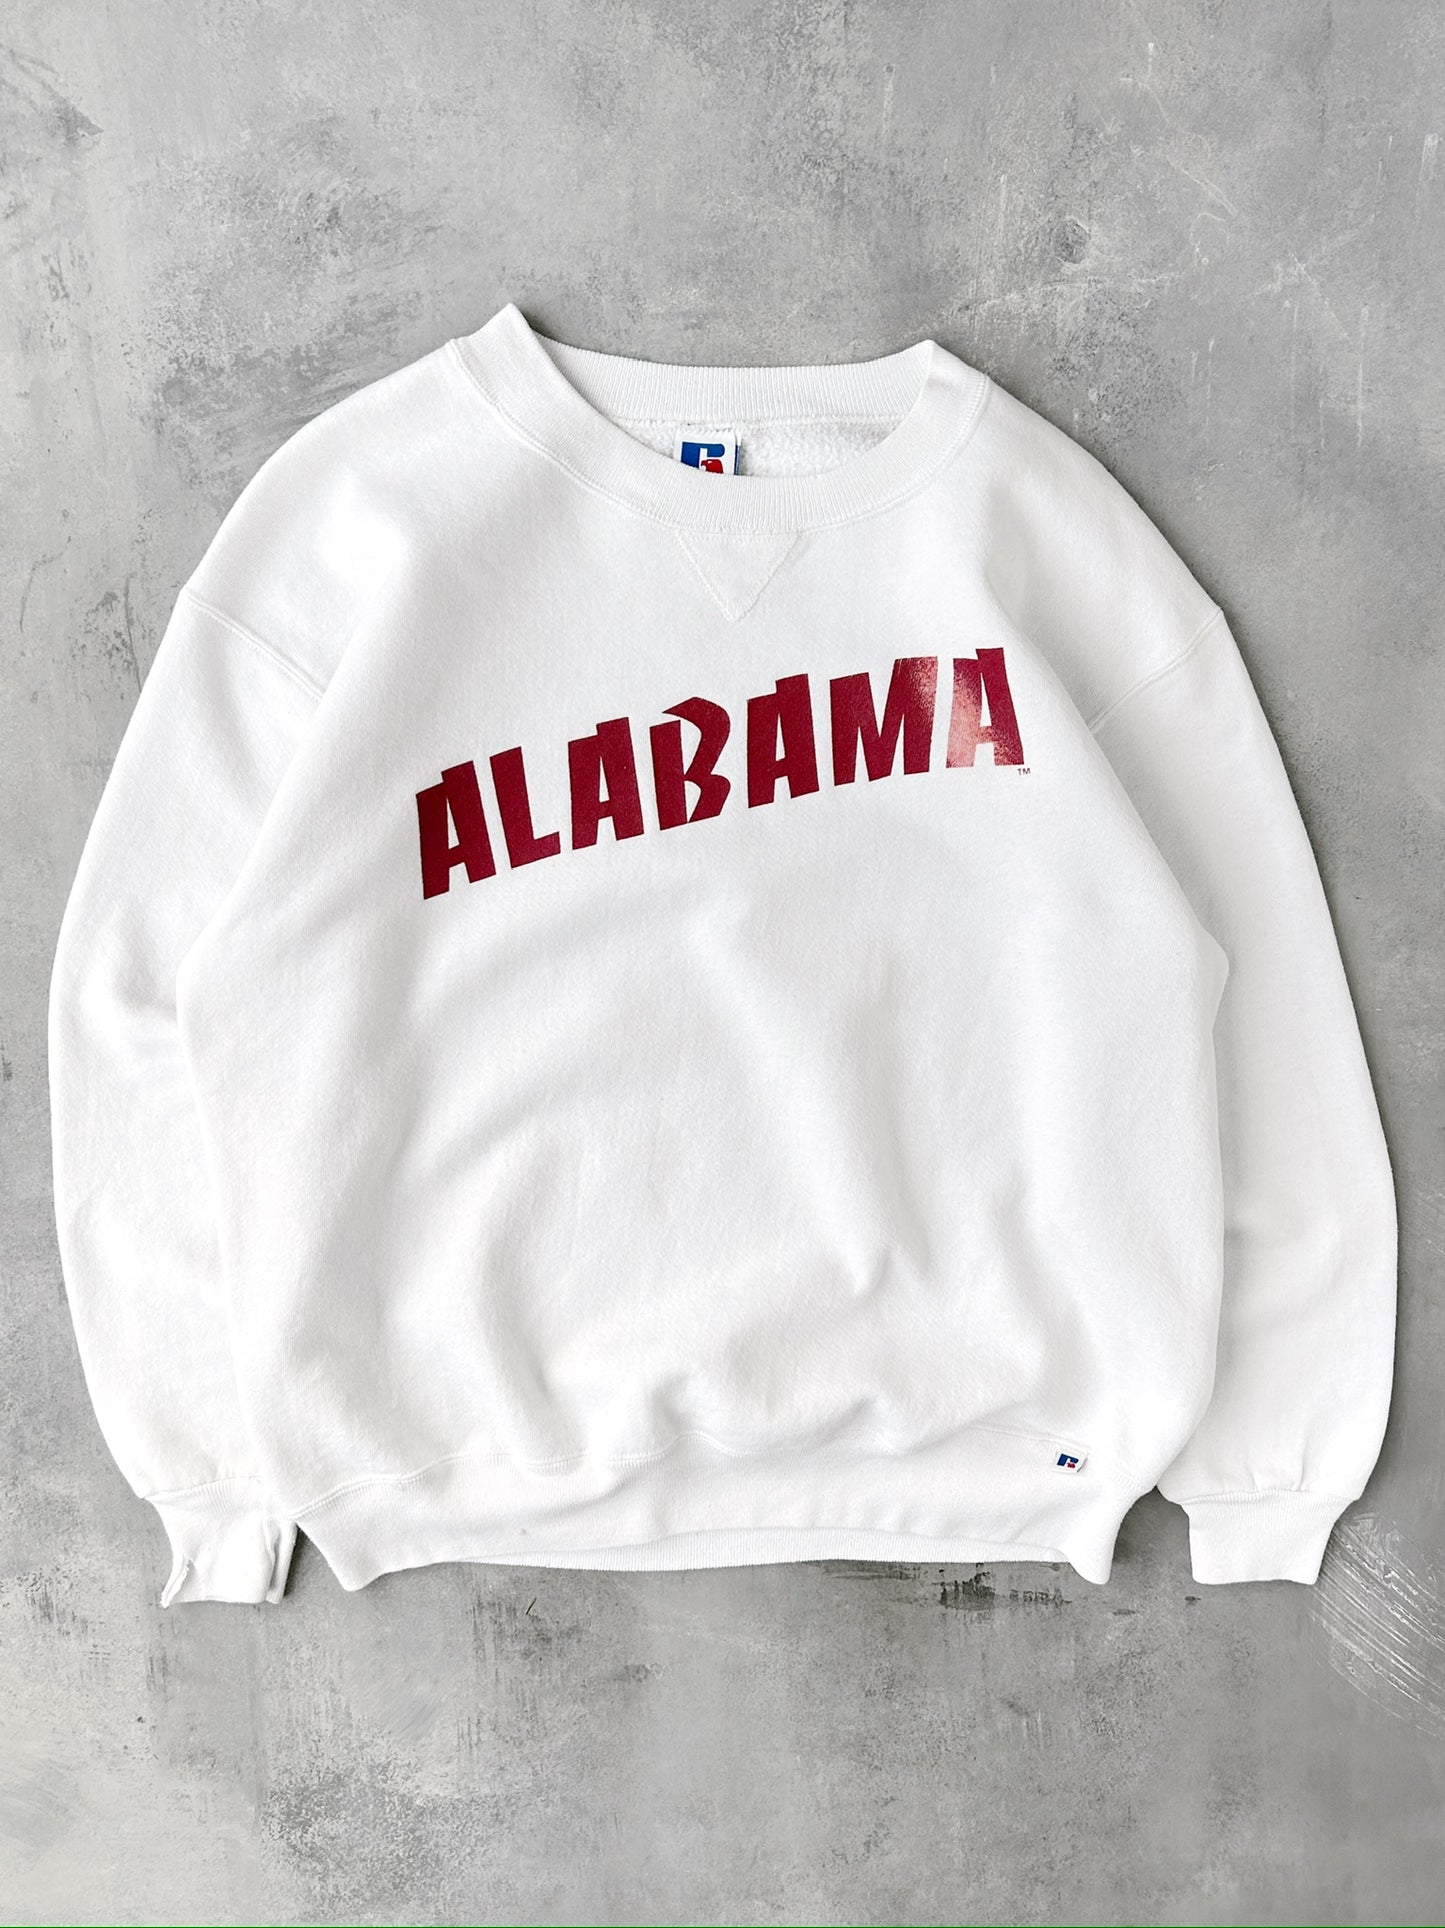 University of Alabama Sweatshirt 90's - Large